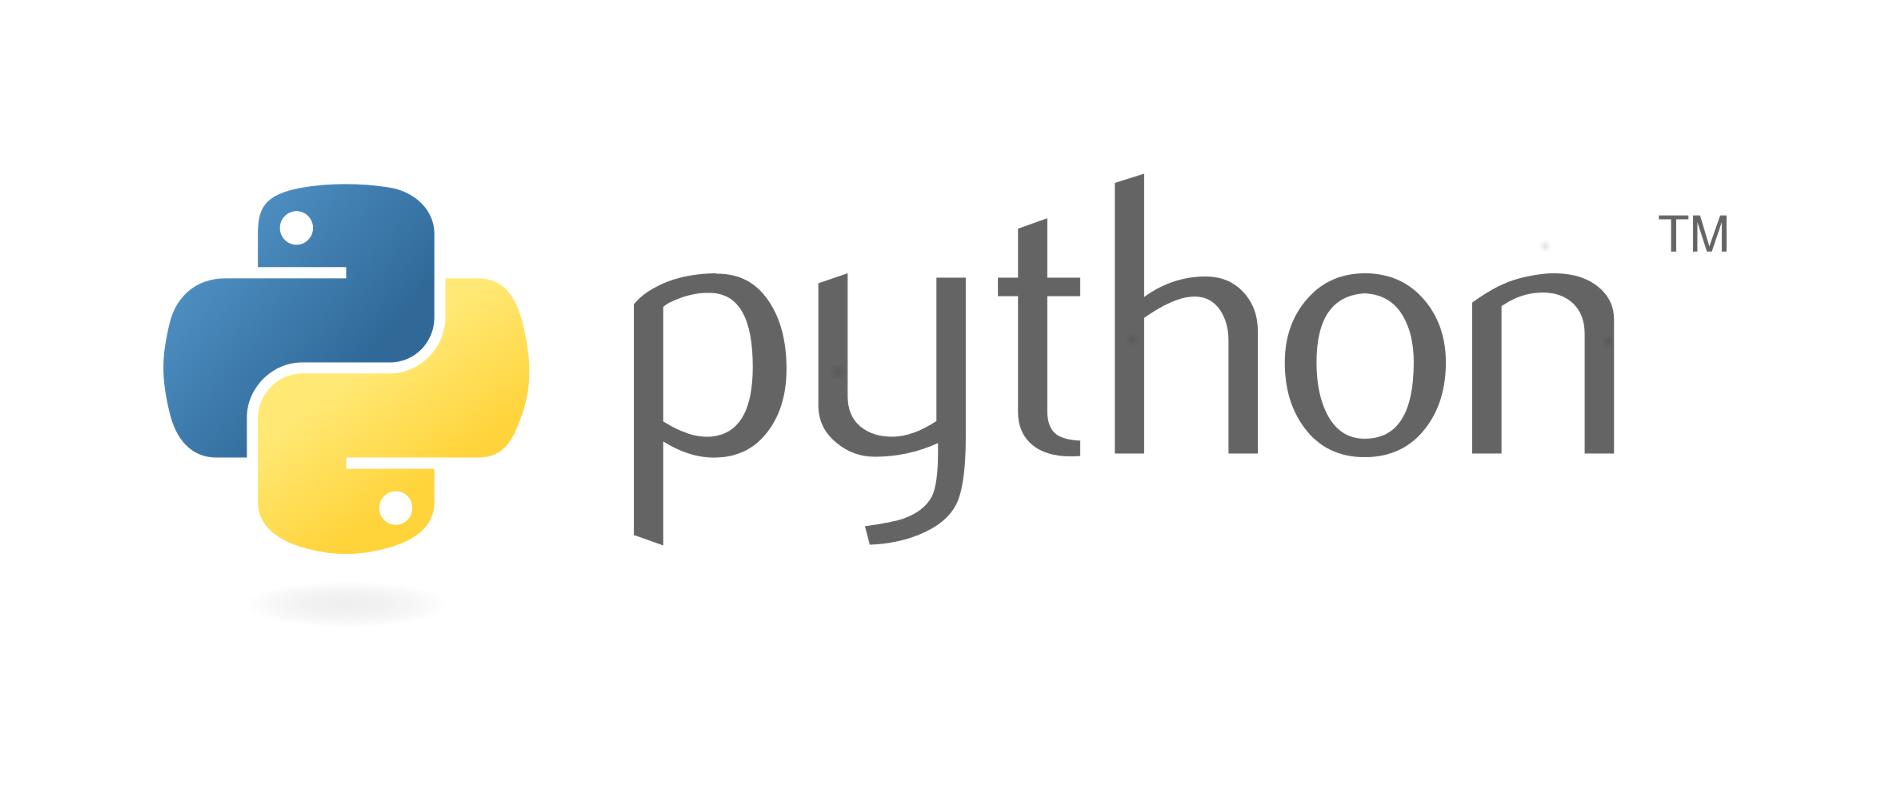 テキストデータ処理プログラム (Python)